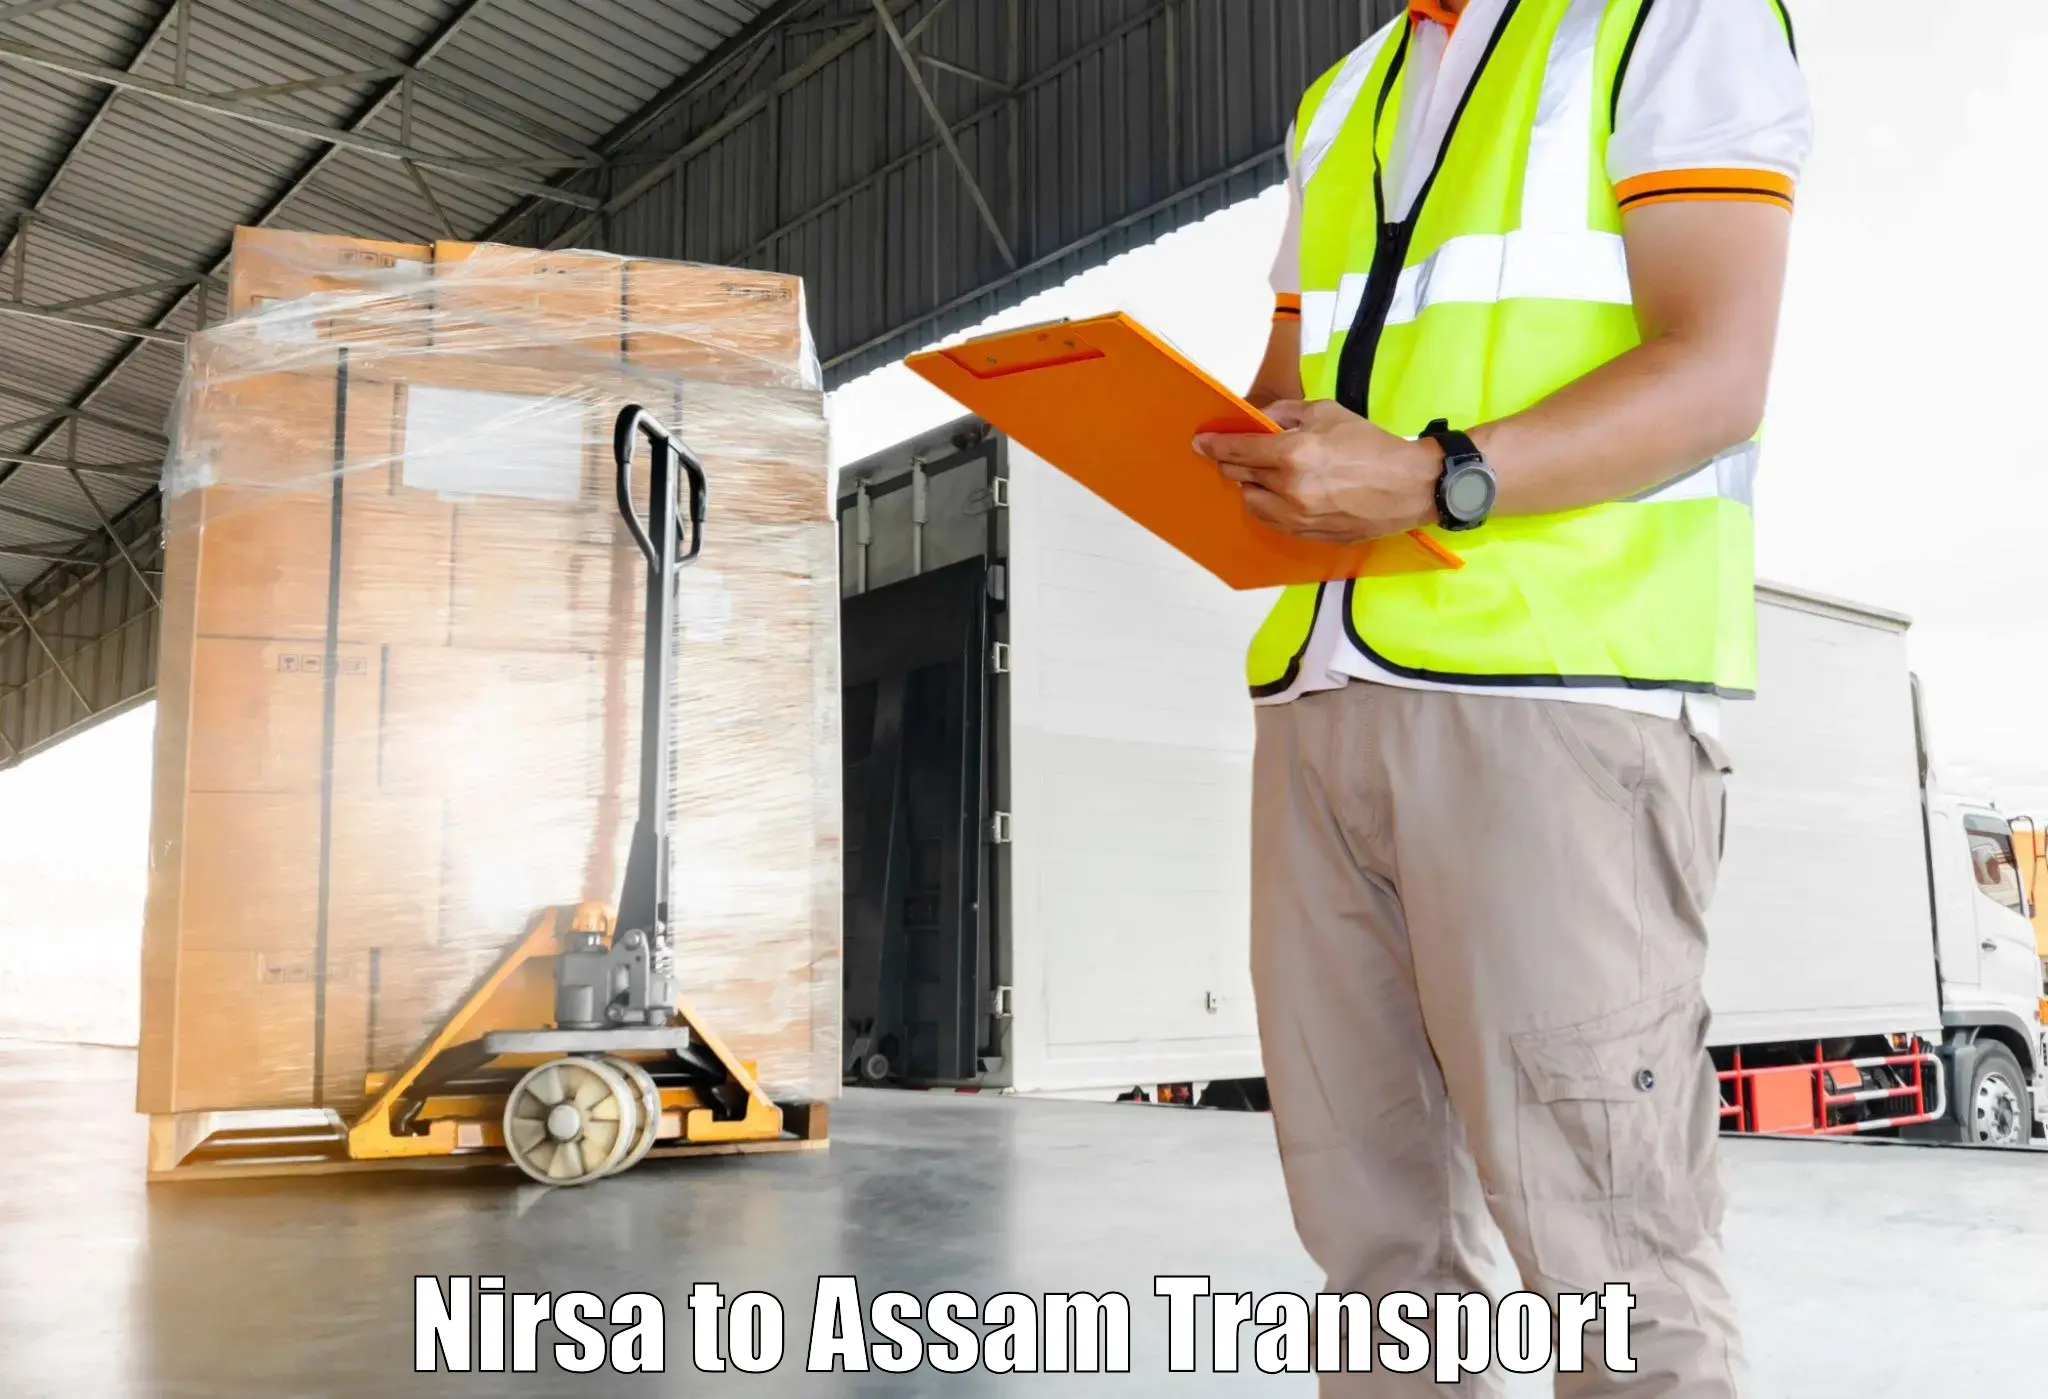 Shipping partner in Nirsa to Rangia